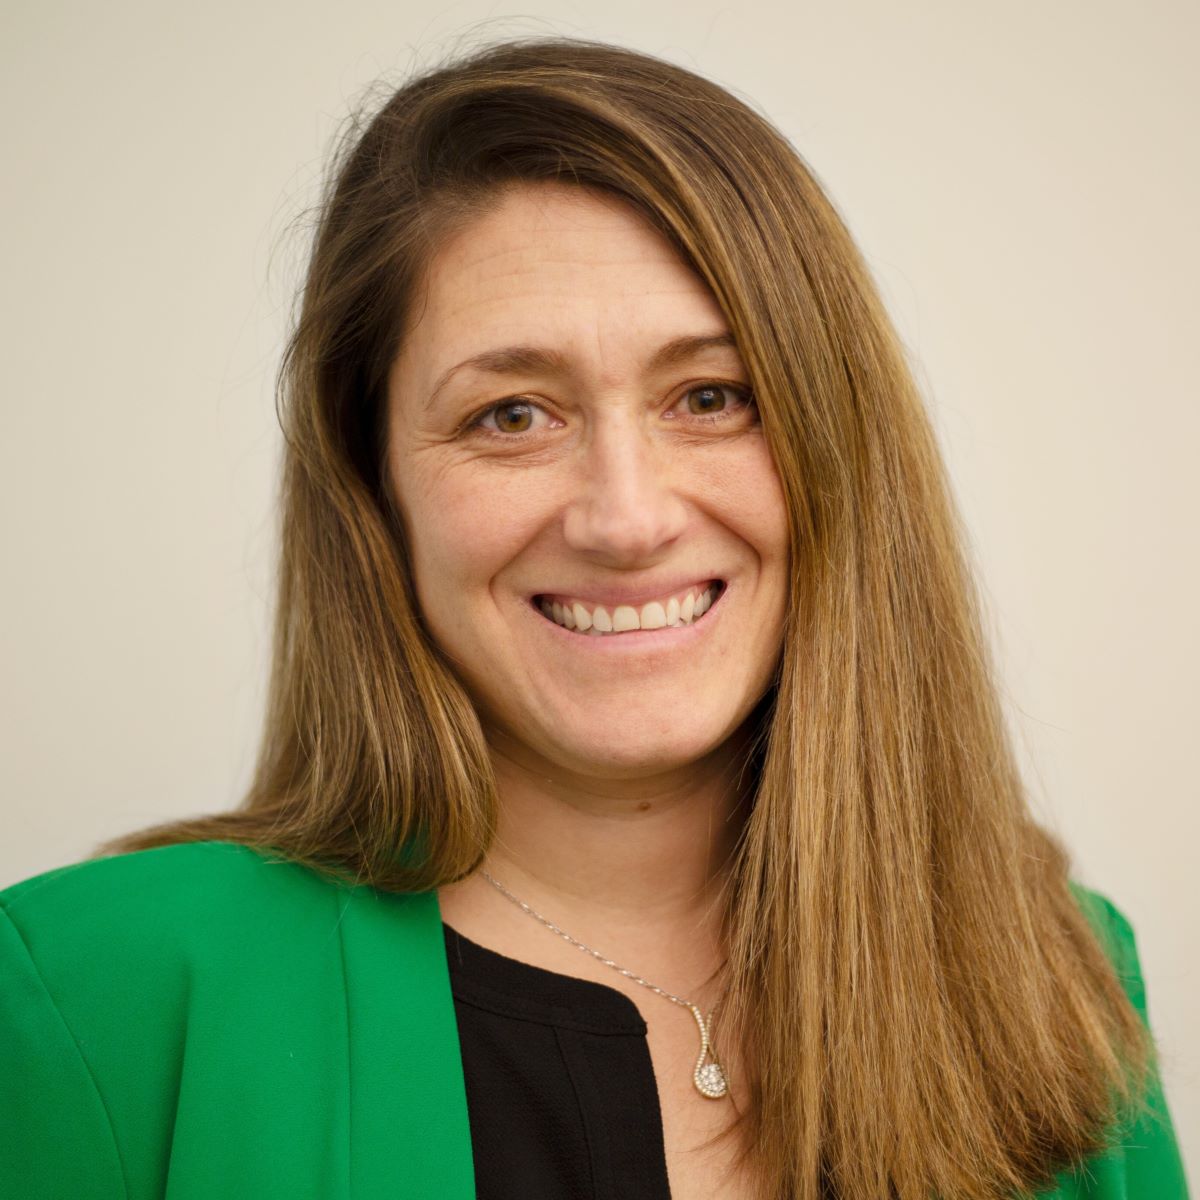 Lauren McBride, Director of People & Culture at Rhino Foods